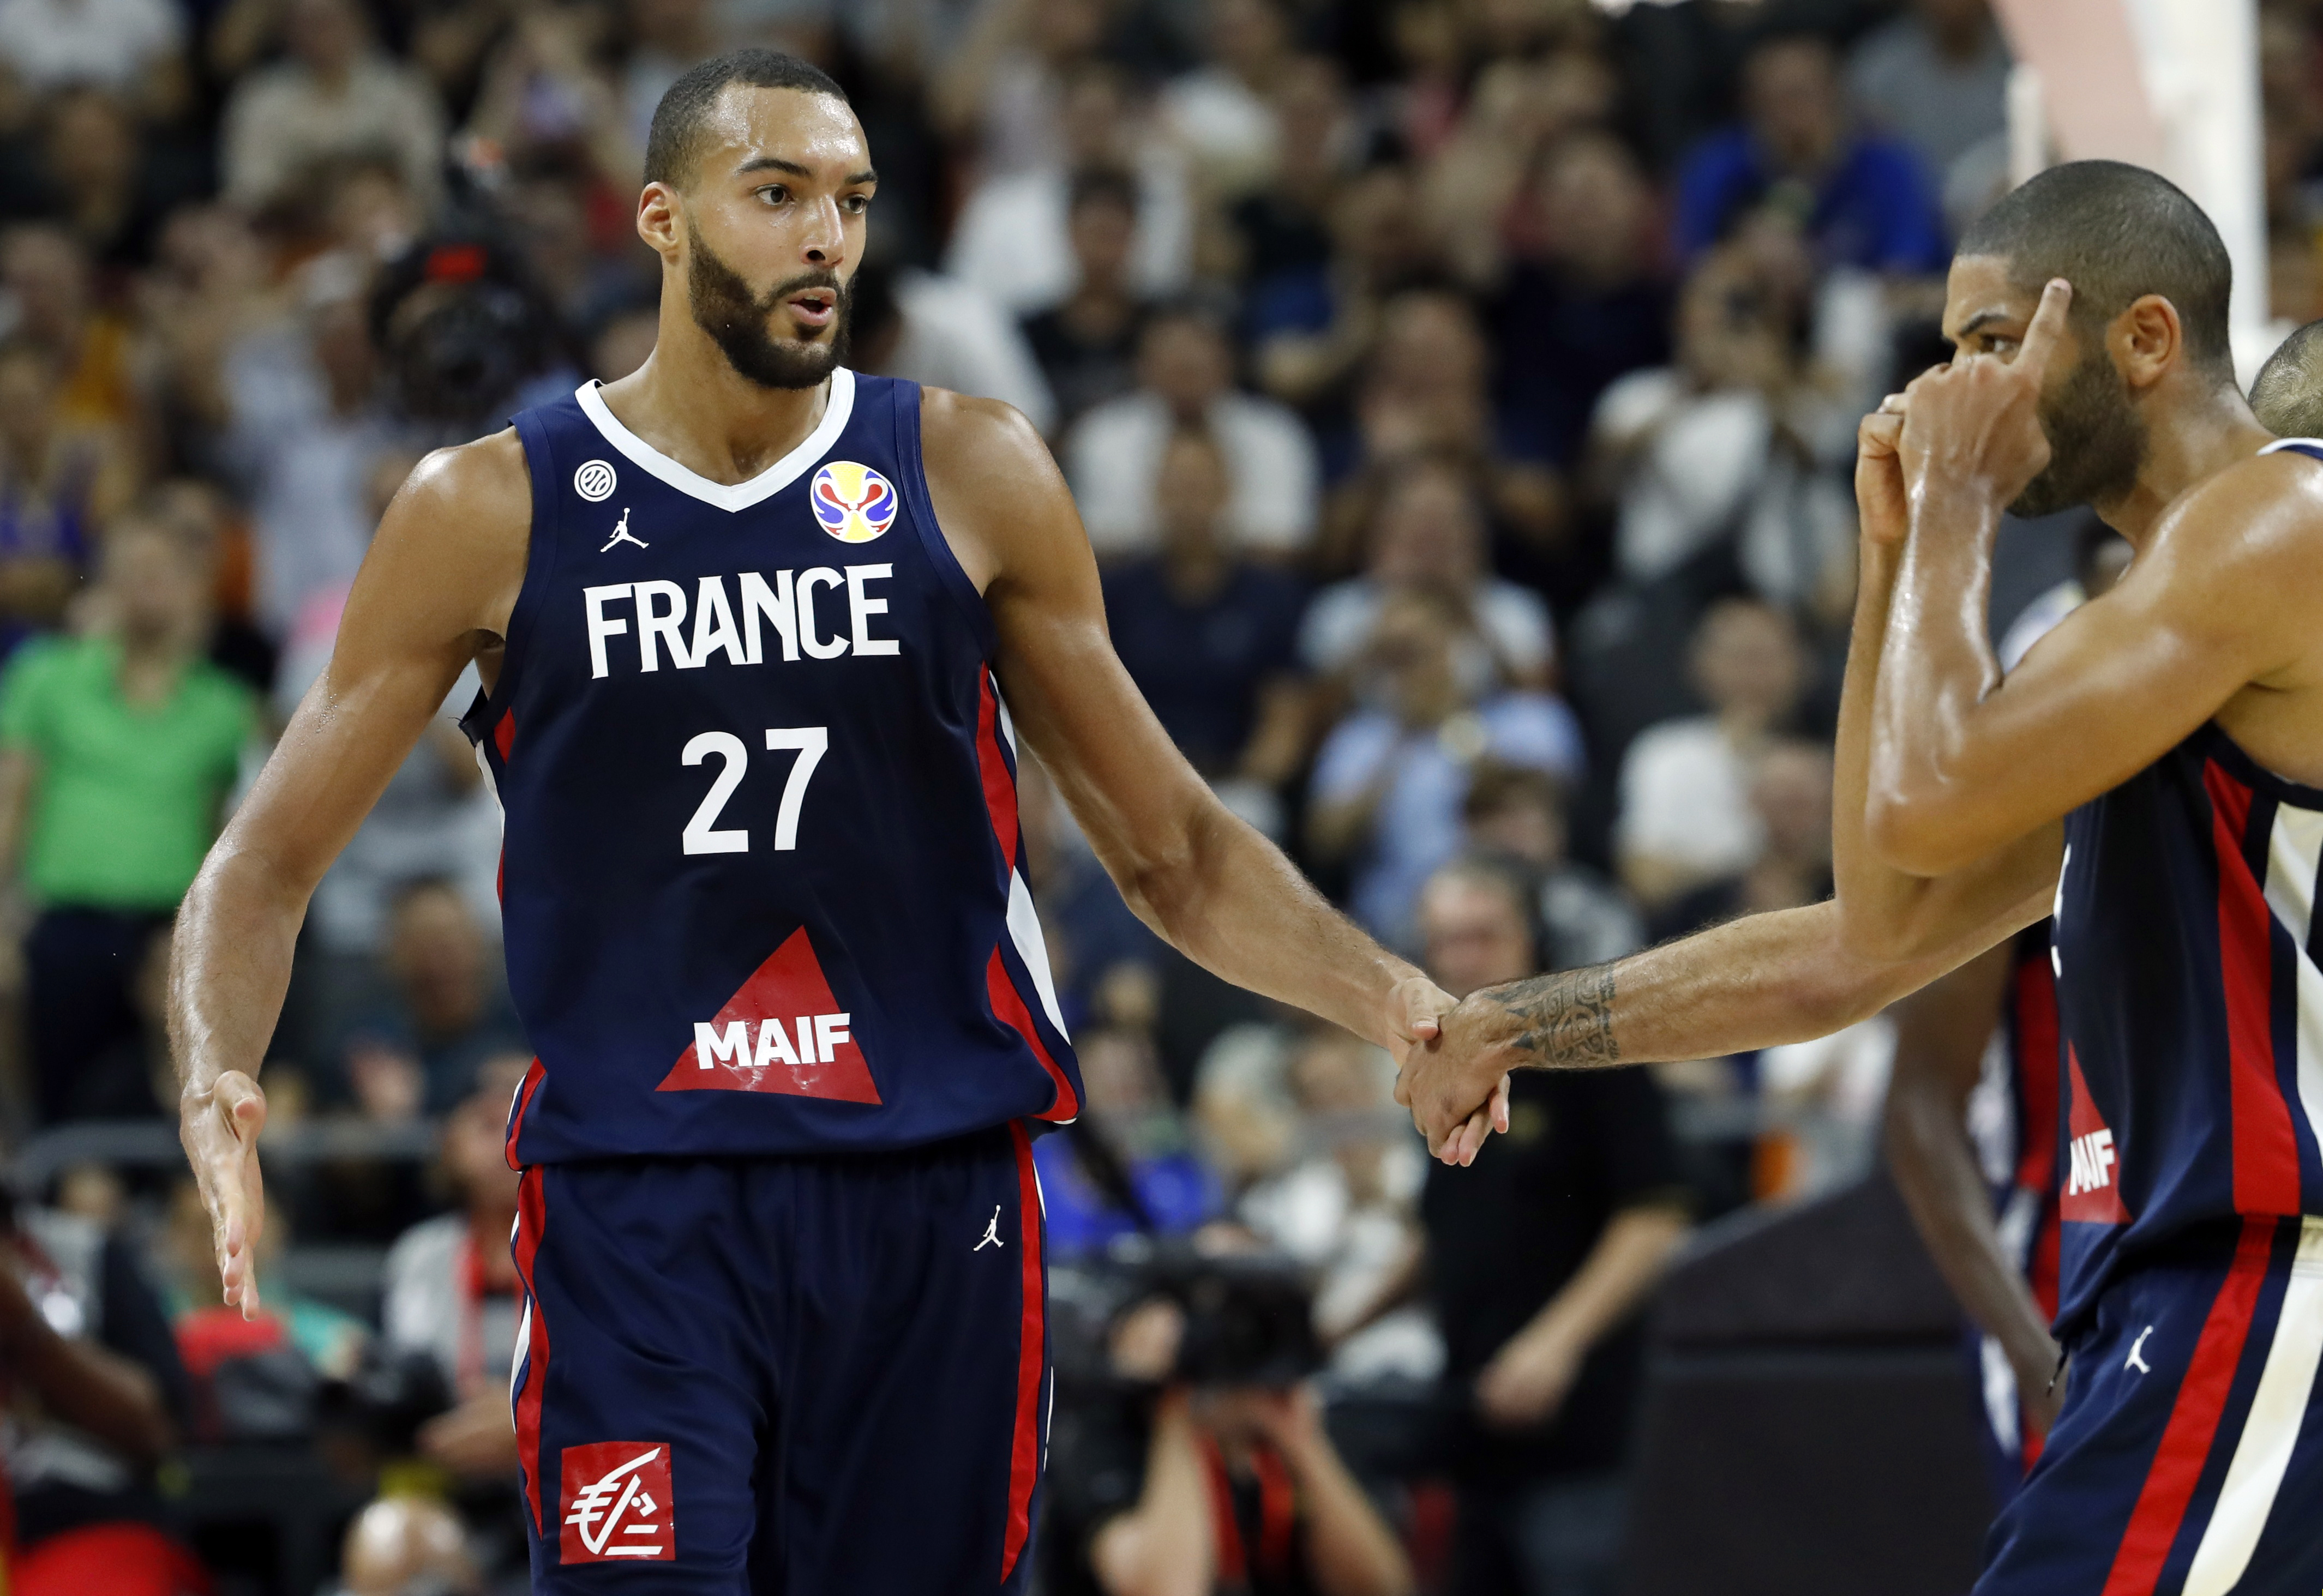 Μουντομπάσκετ 2019: Με επικό τίτλο για τη Γαλλία κυκλοφόρησε η Equipe [pic]